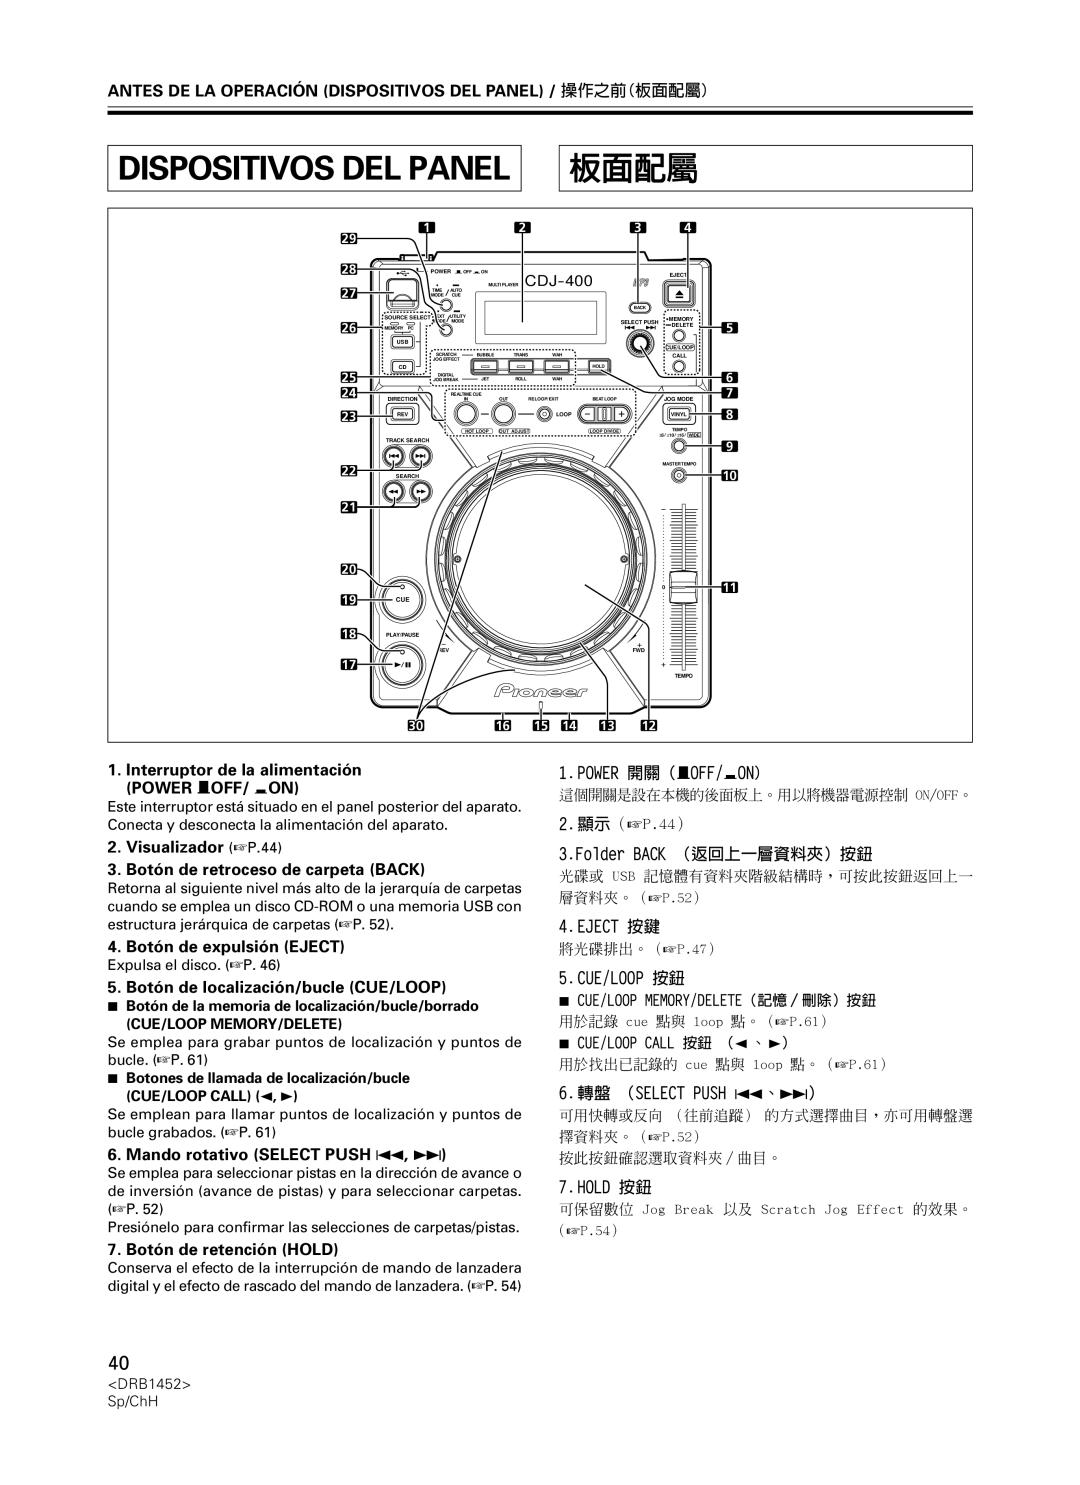 Pioneer CDJ-400 Interruptor de la alimentación POWER —OFF/ _ON, Visualizador P.44, 3.Botón de retroceso de carpeta BACK 